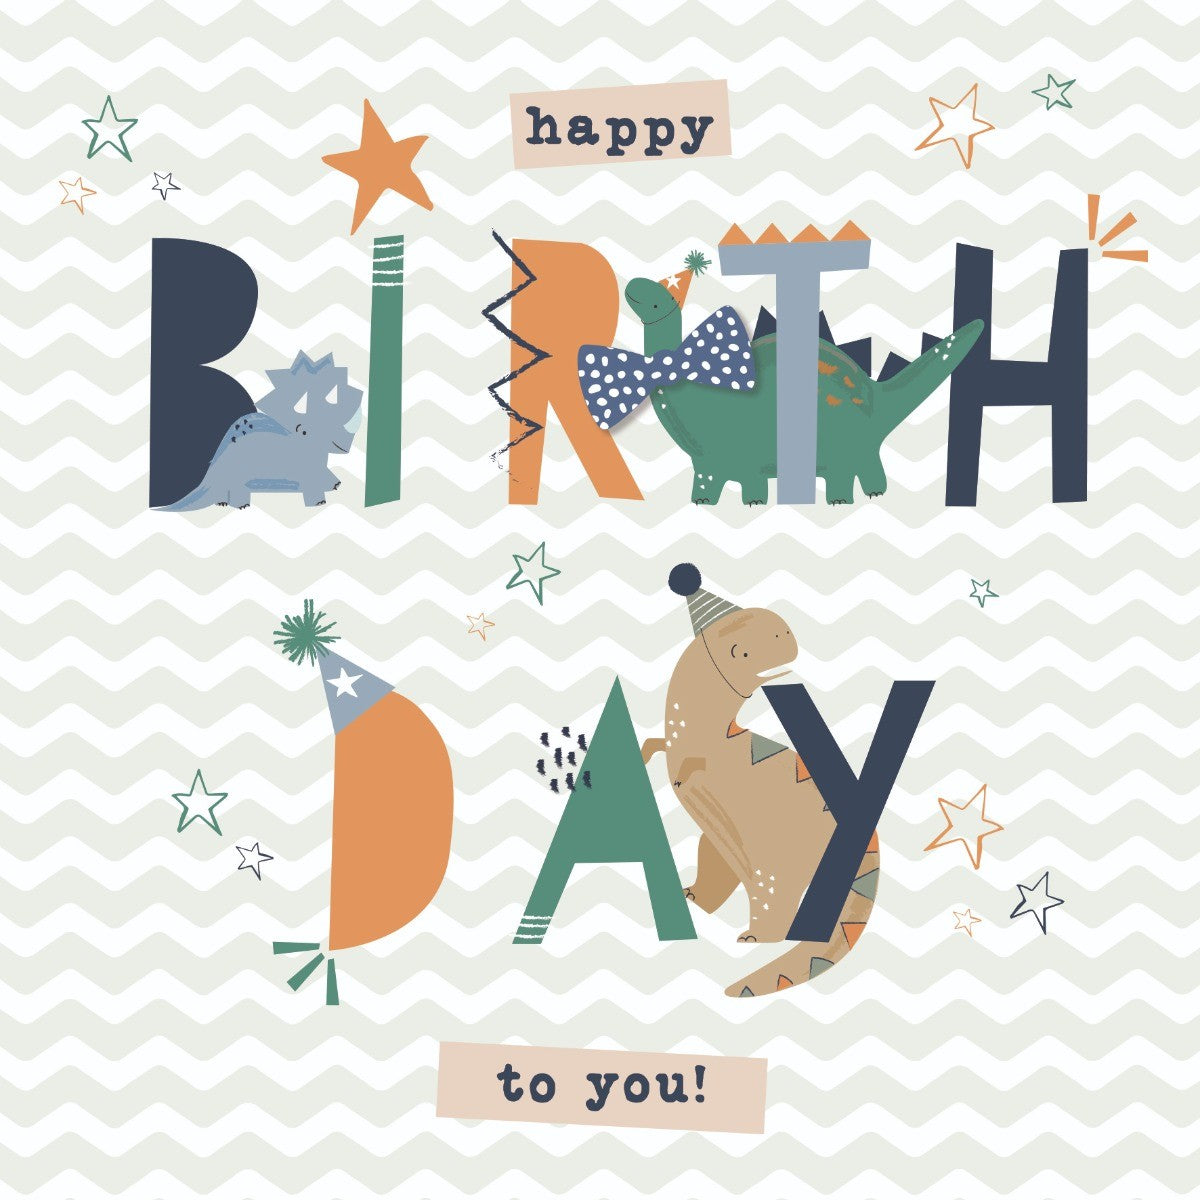 Fun Dinosaur Birthday Card